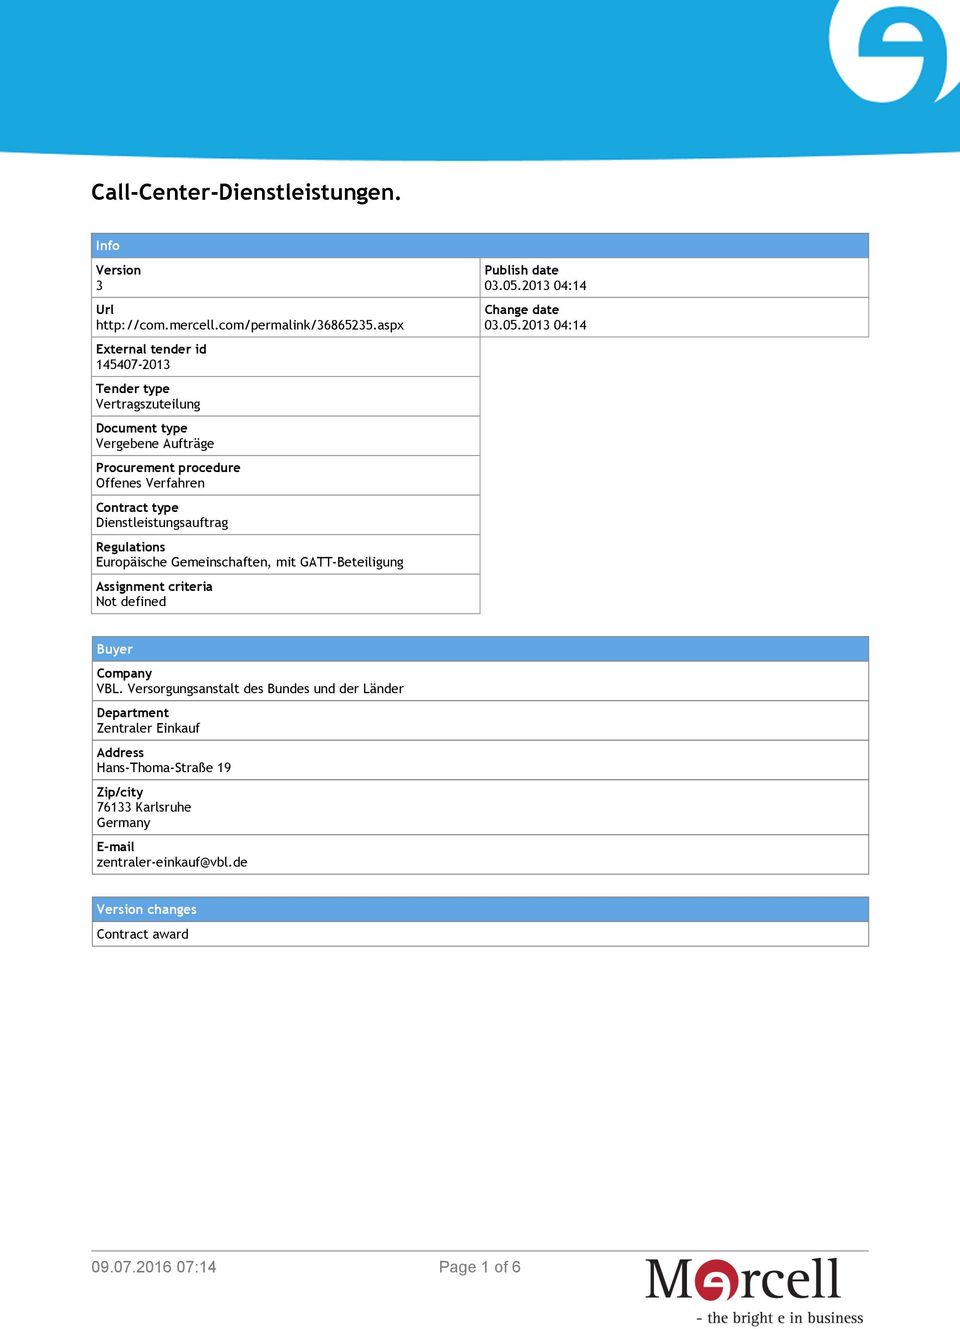 Dienstleistungsauftrag Regulations Europäische Gemeinschaften, mit GATT-Beteiligung Assignment criteria Not defined Publish date 03.05.2013 04:14 Change date 03.